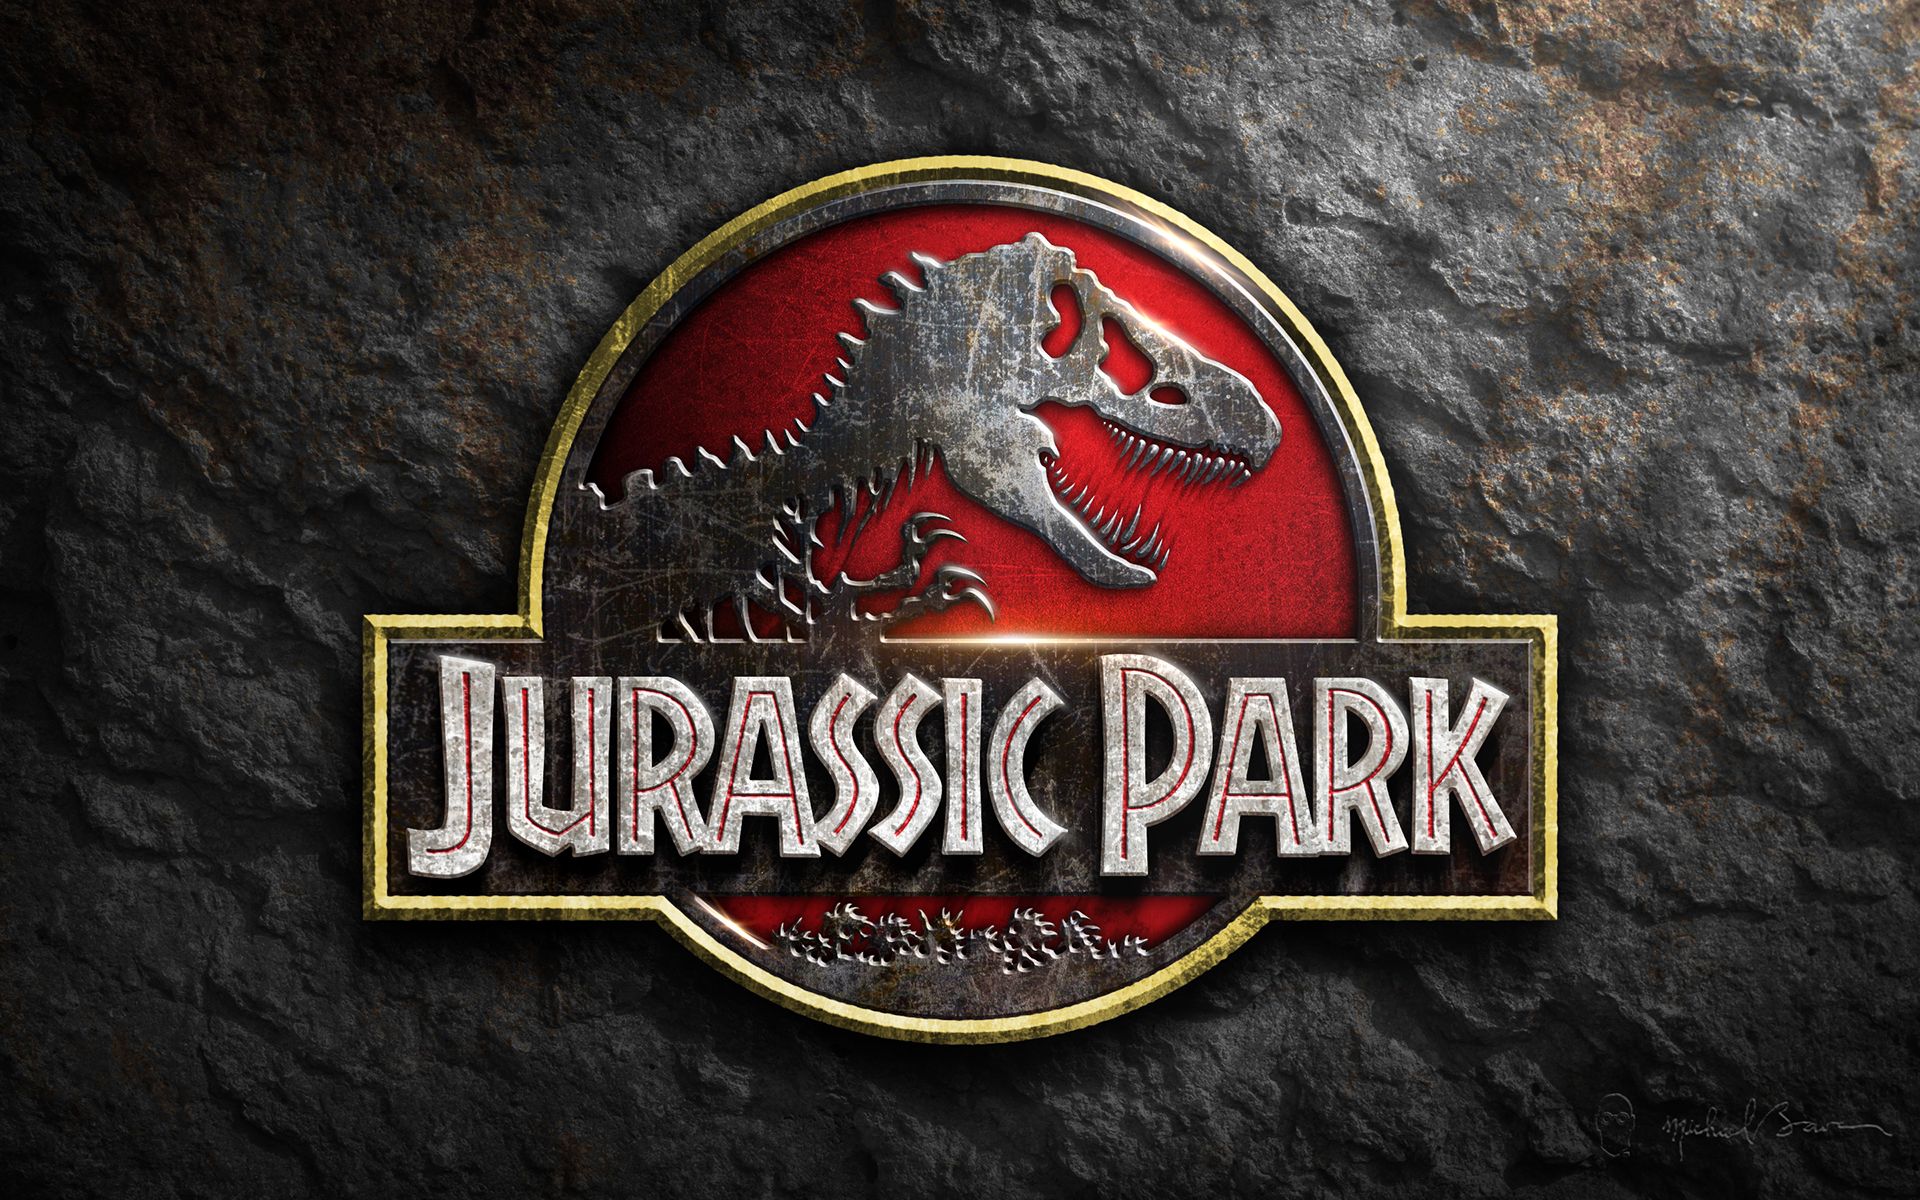 Jurassic Park logo desktop wallpaper on Behance